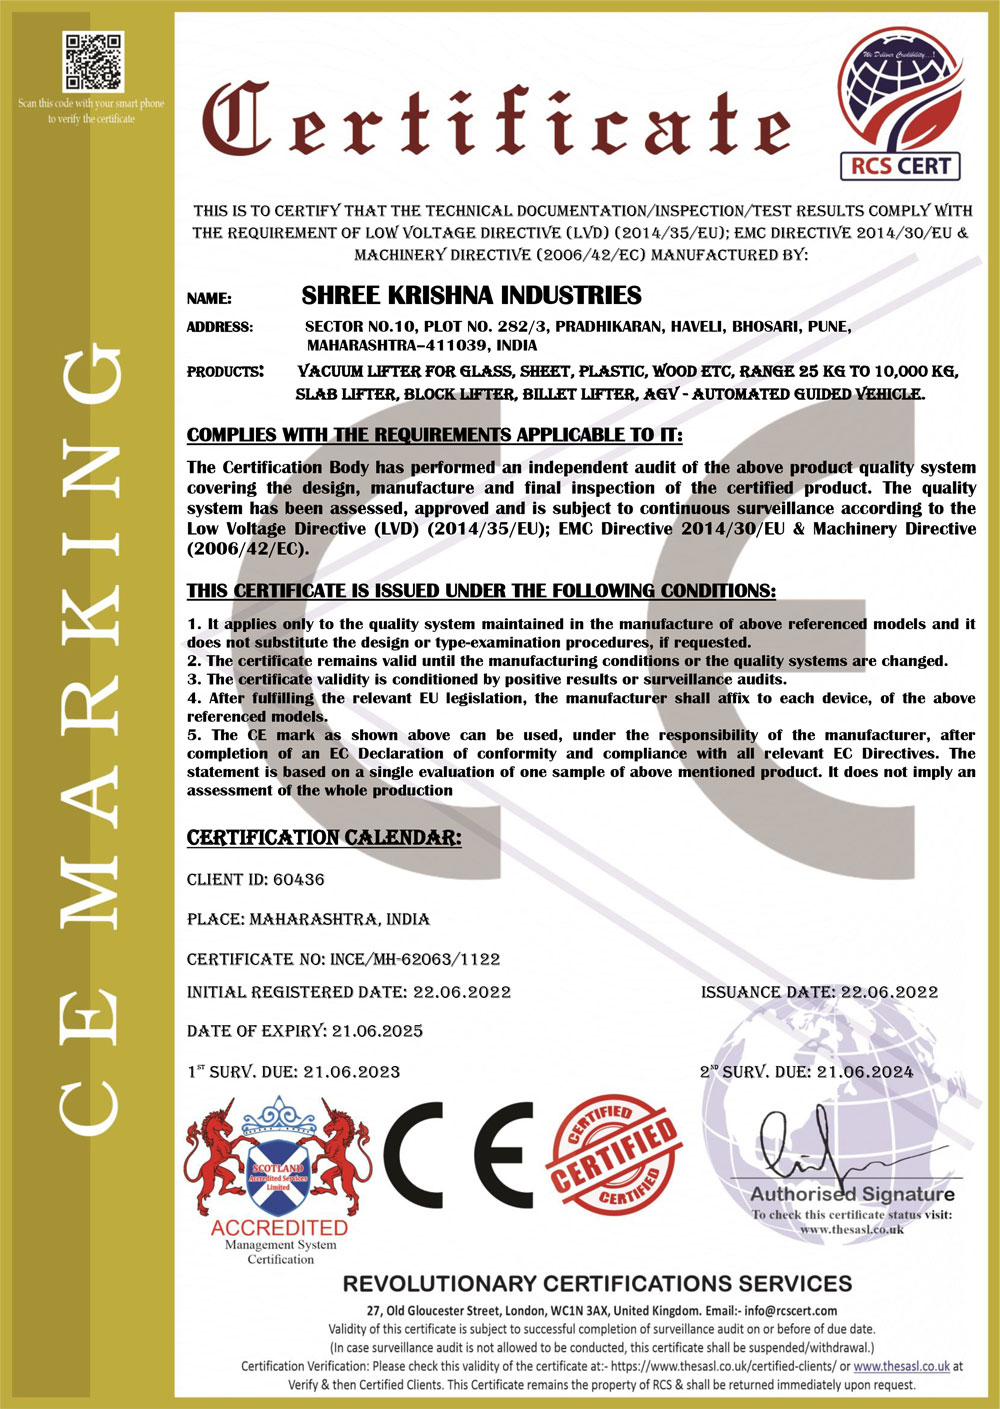 ce-certificate